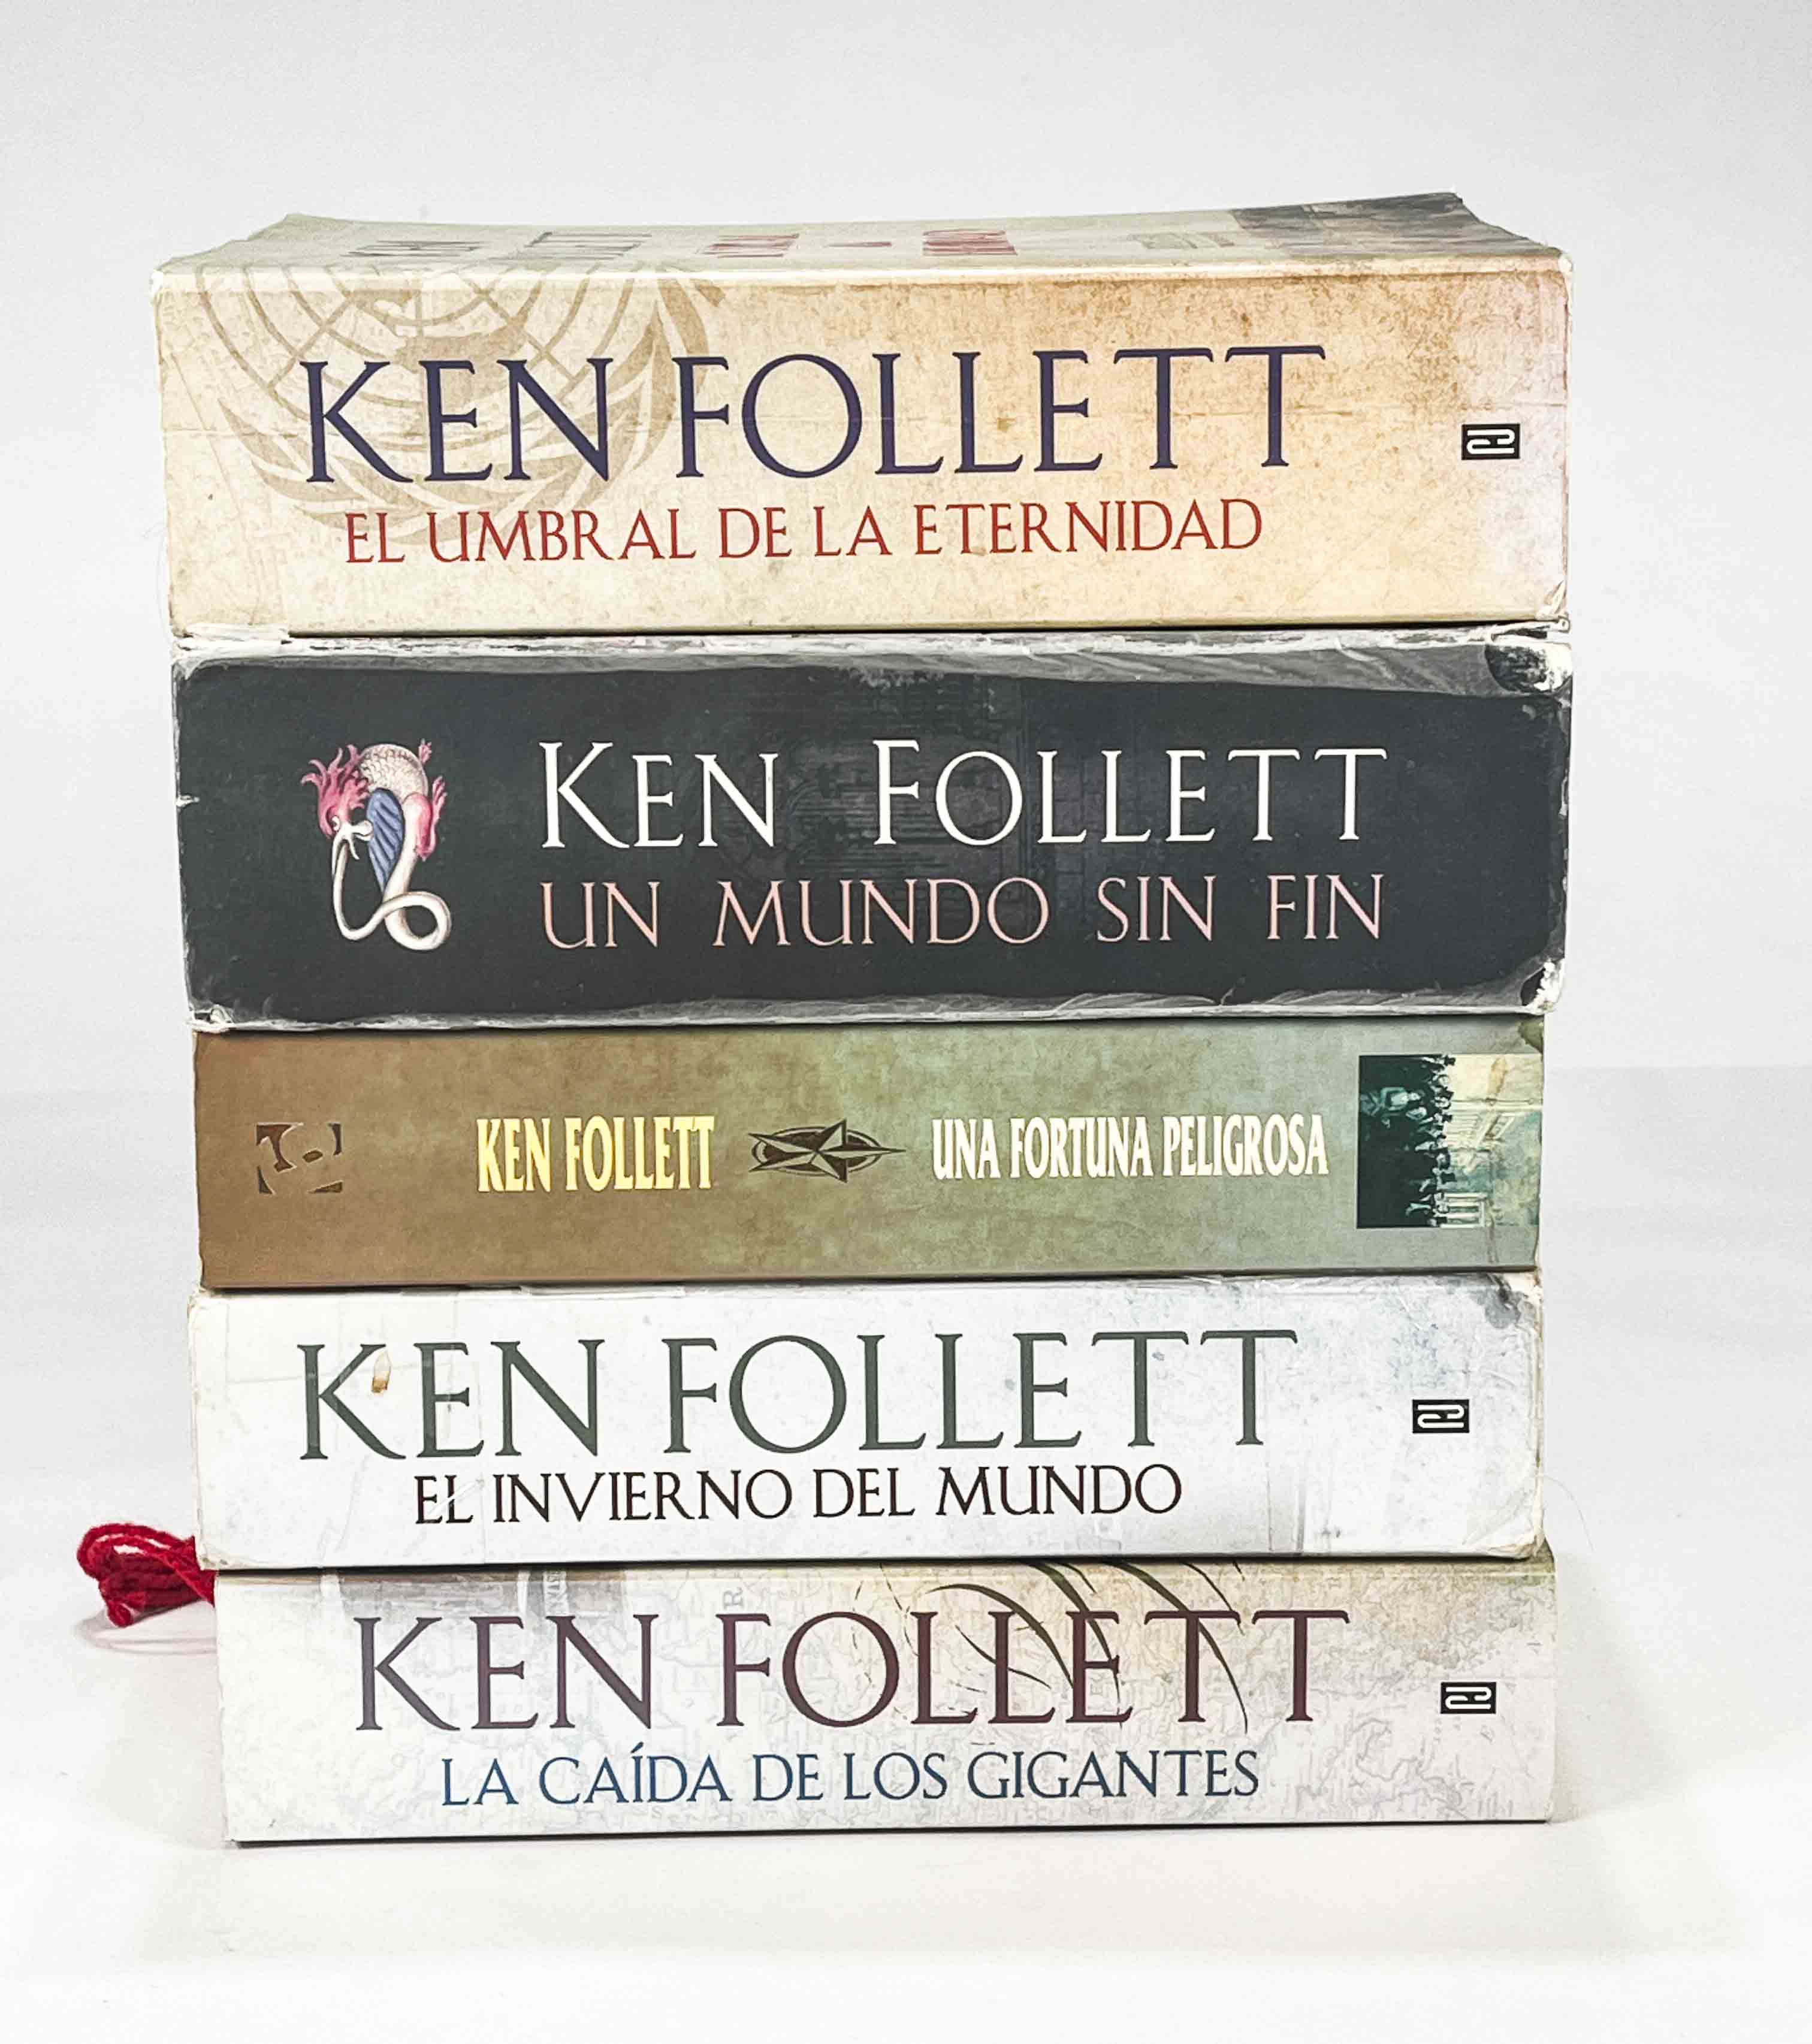 La caída de los gigantes - Ken Follett -5% en libros